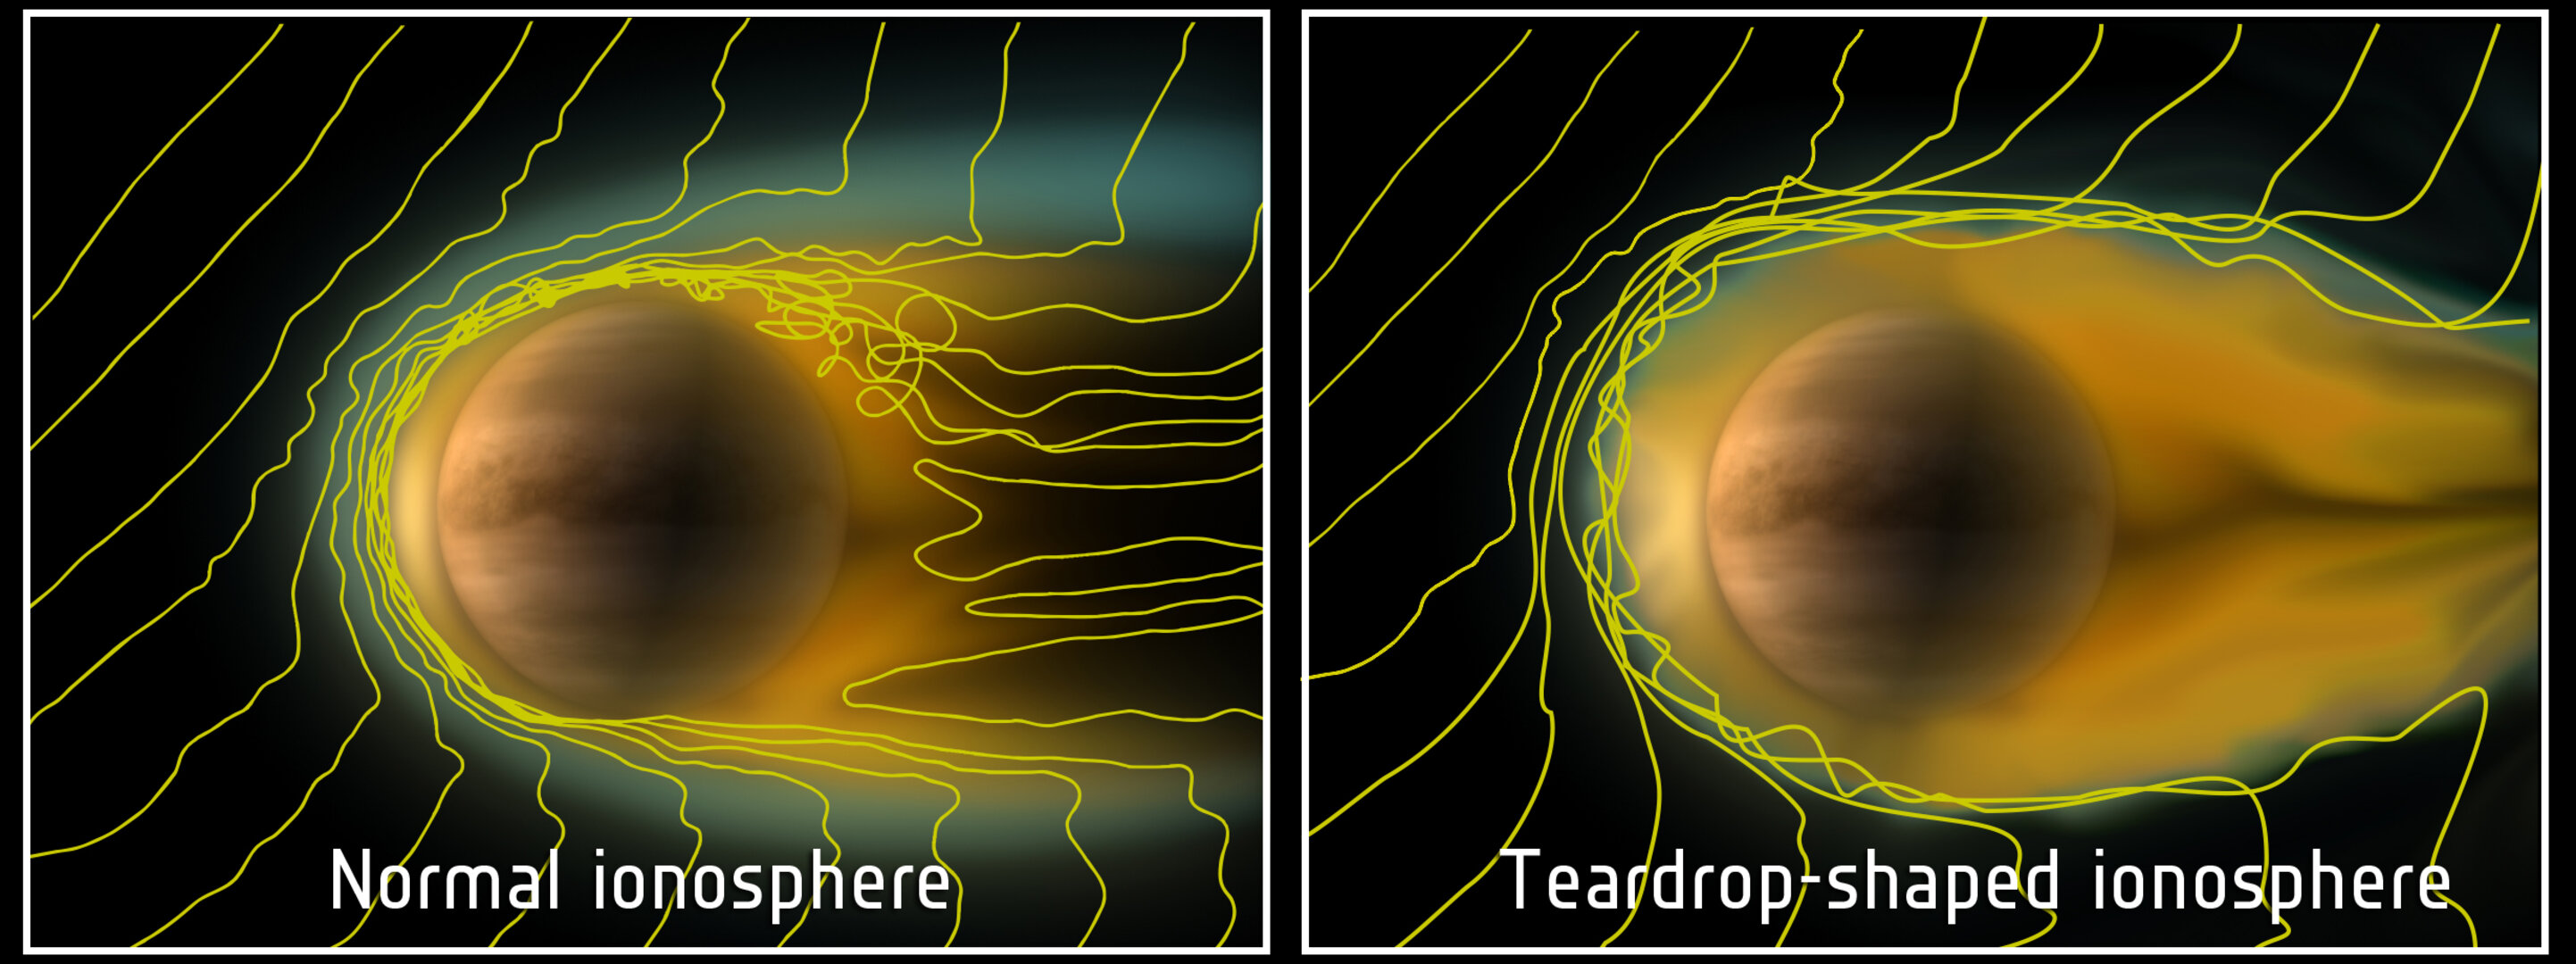 Comet-like ionosphere at Venus